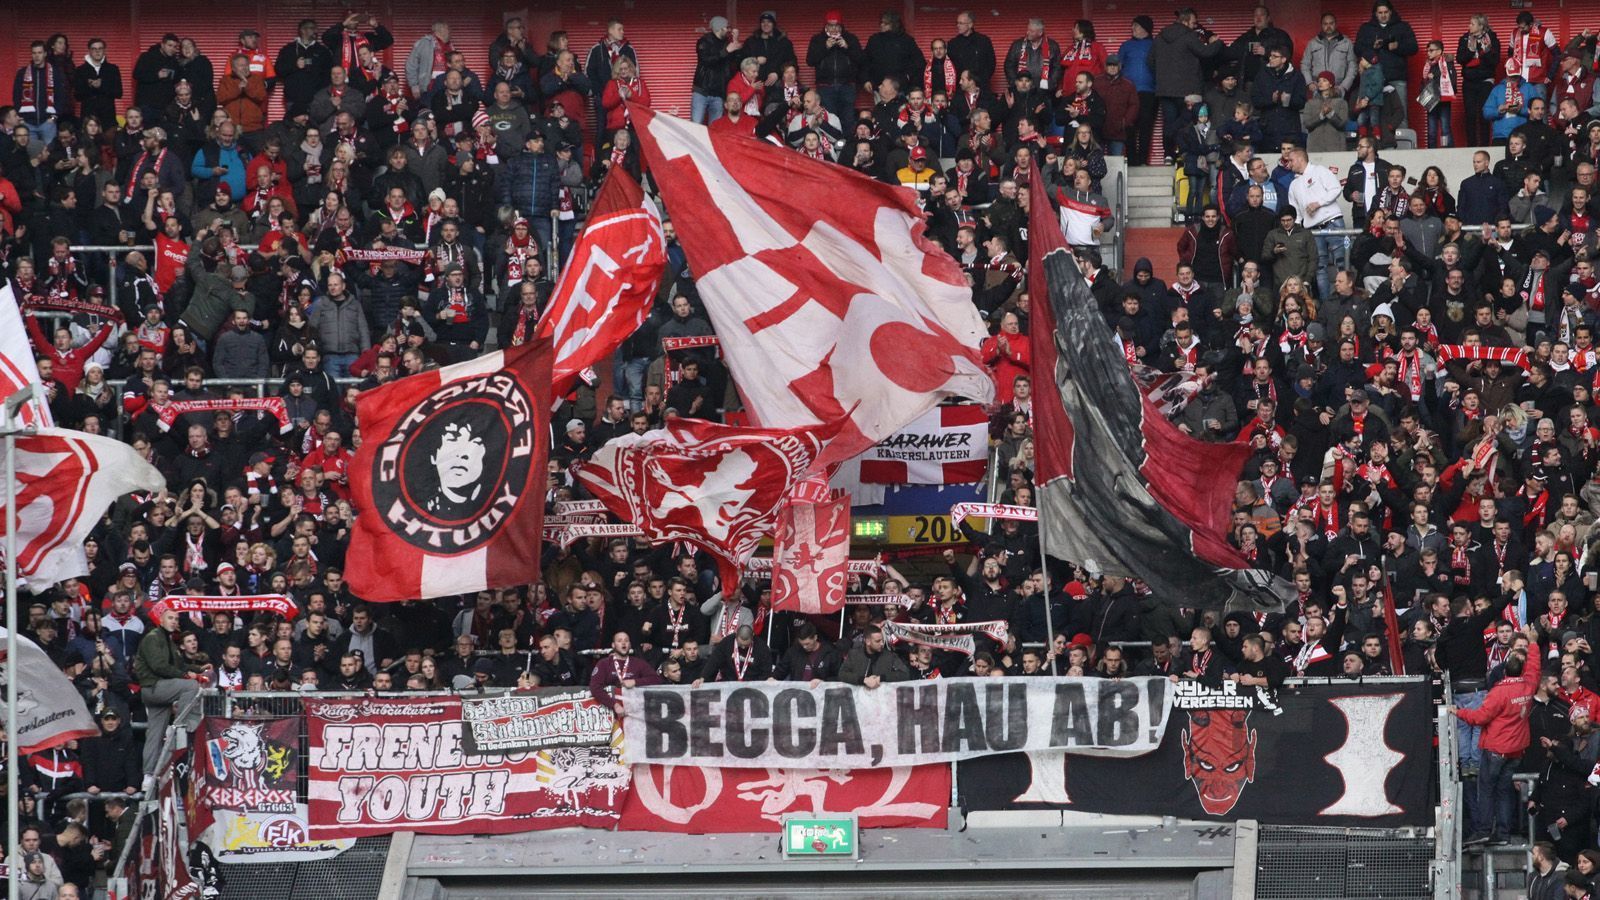 
                <strong>1. FC Kaiserslautern</strong><br>
                Die Roten Teufel haben ihr Profi-Abteilung in die 1. FC Kaiserslautern GmbH & Co. KGaA ausgegliedert. Neben dem Verein sind noch sechs regionale Unternehmer als Aktionäre beteiligt. Unter ihnen befindet sich der Luxemburger Immobilieninvestor Flavio Becca, der unter der Fan-Gemeinde umstritten ist.
              